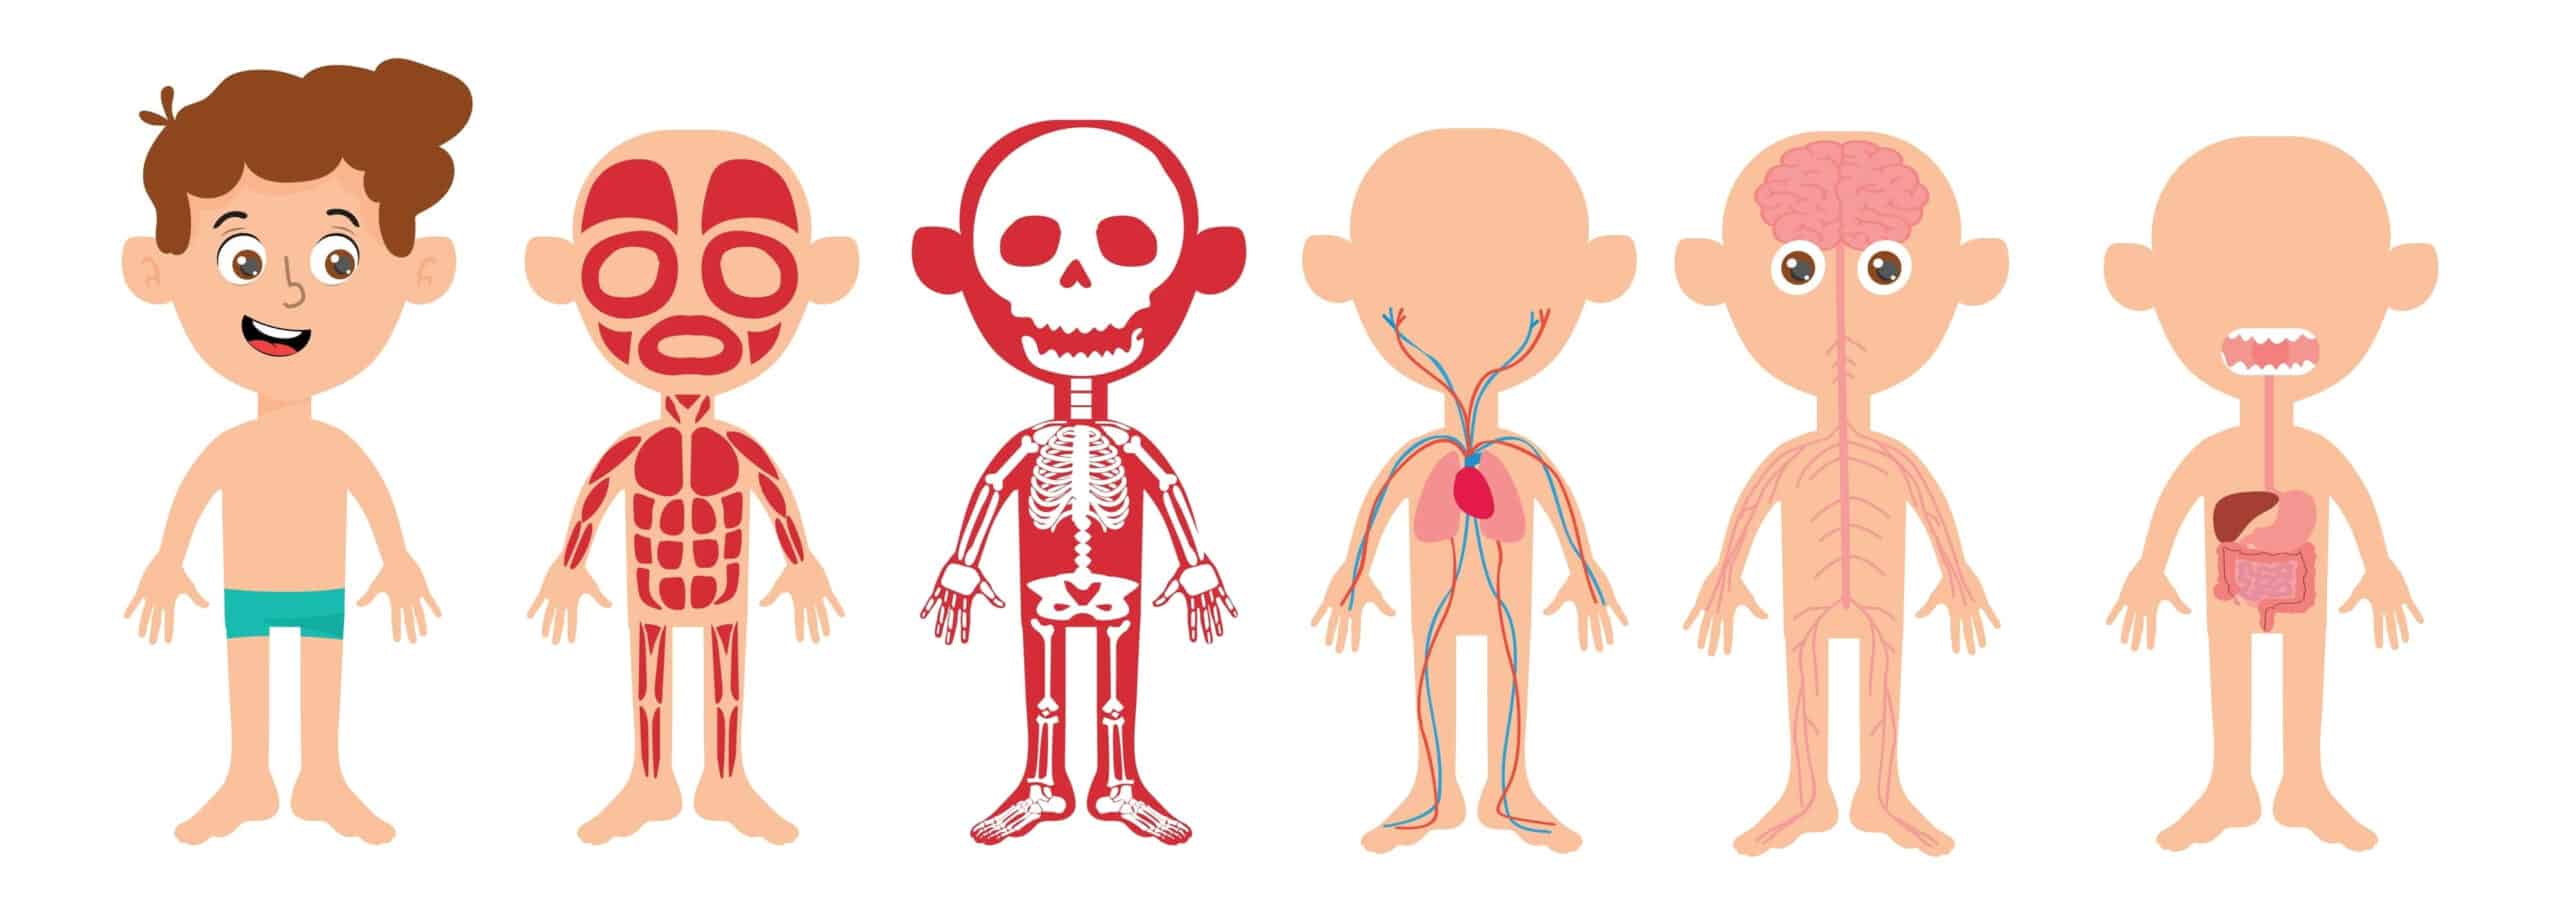 partes del cuerpo humano